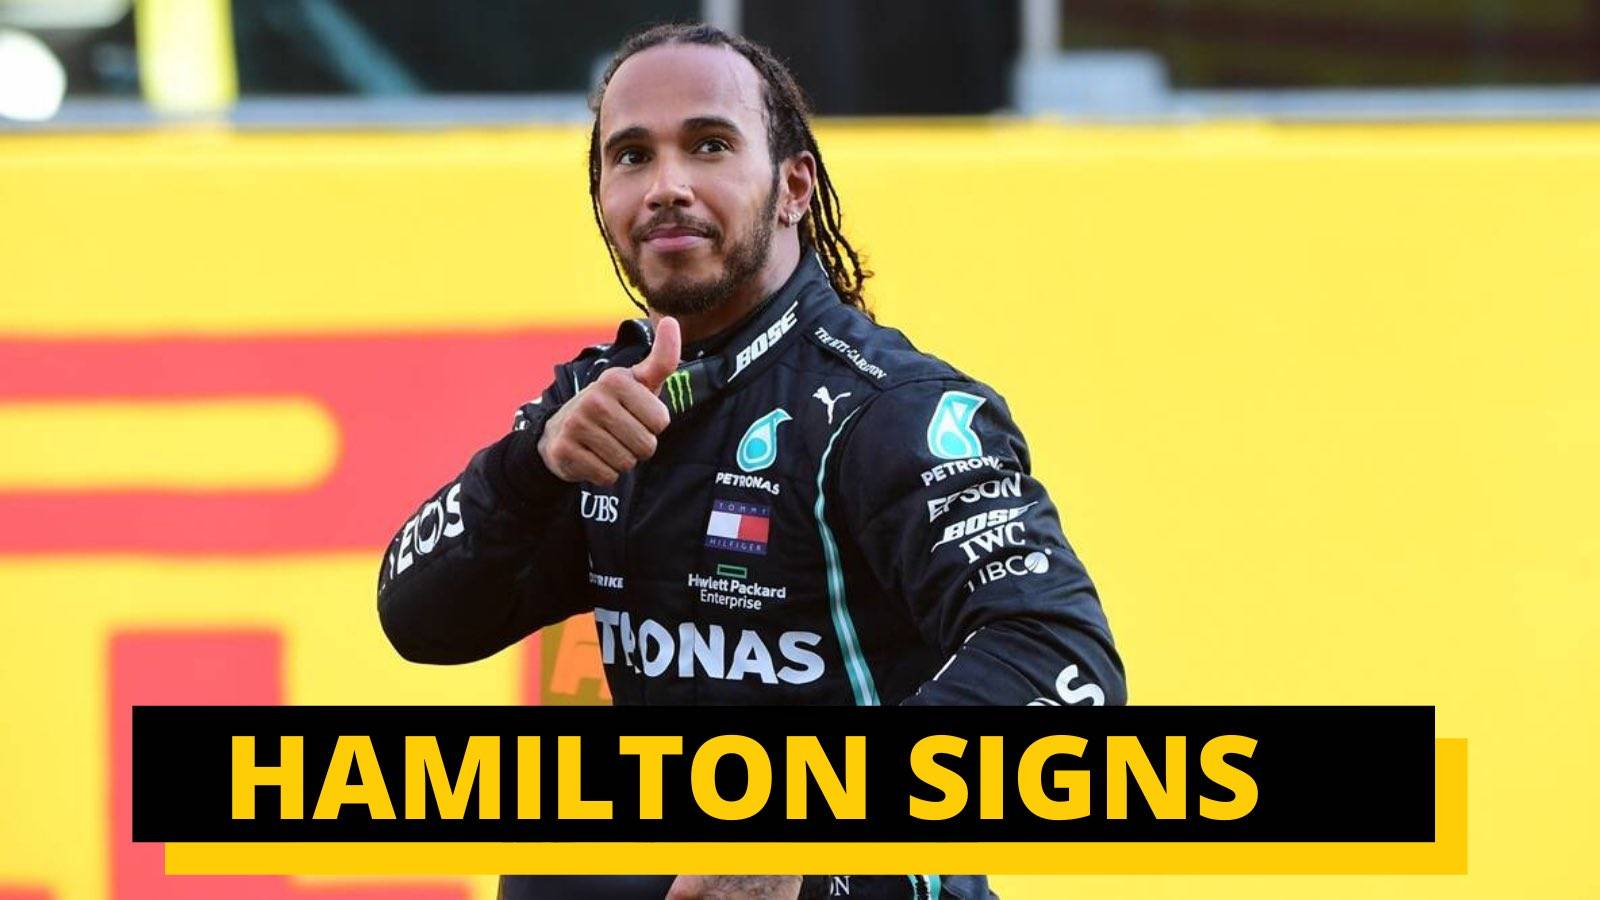 为什么汉密尔顿在2021年赢得第八届冠军后只续签一年的合同？难道要告别F1吗？  _狼